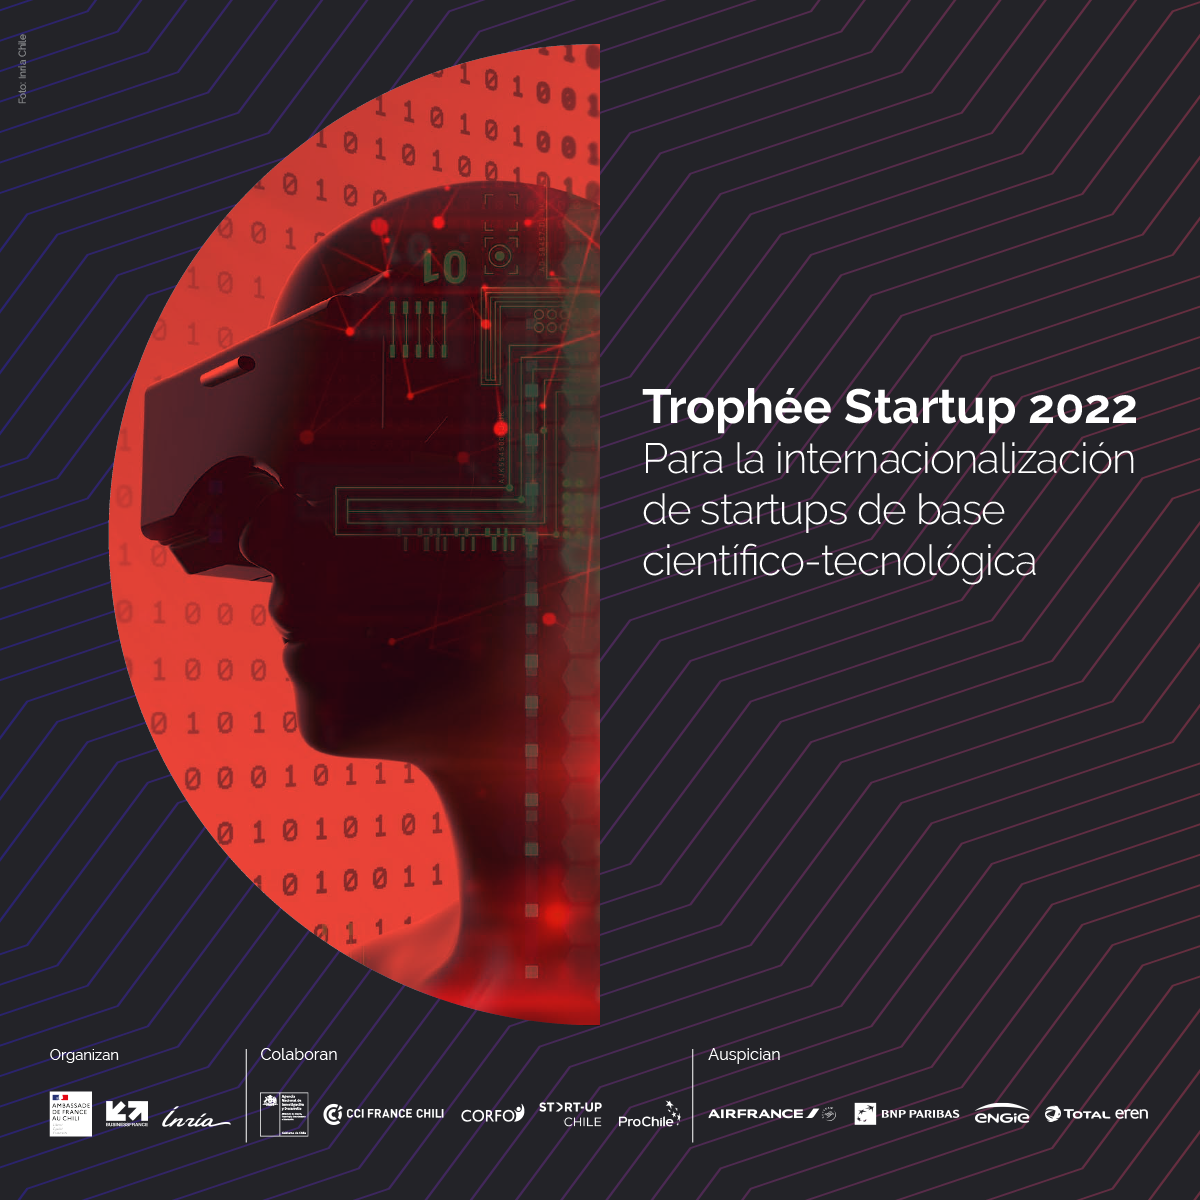 Trophée Startup 2022